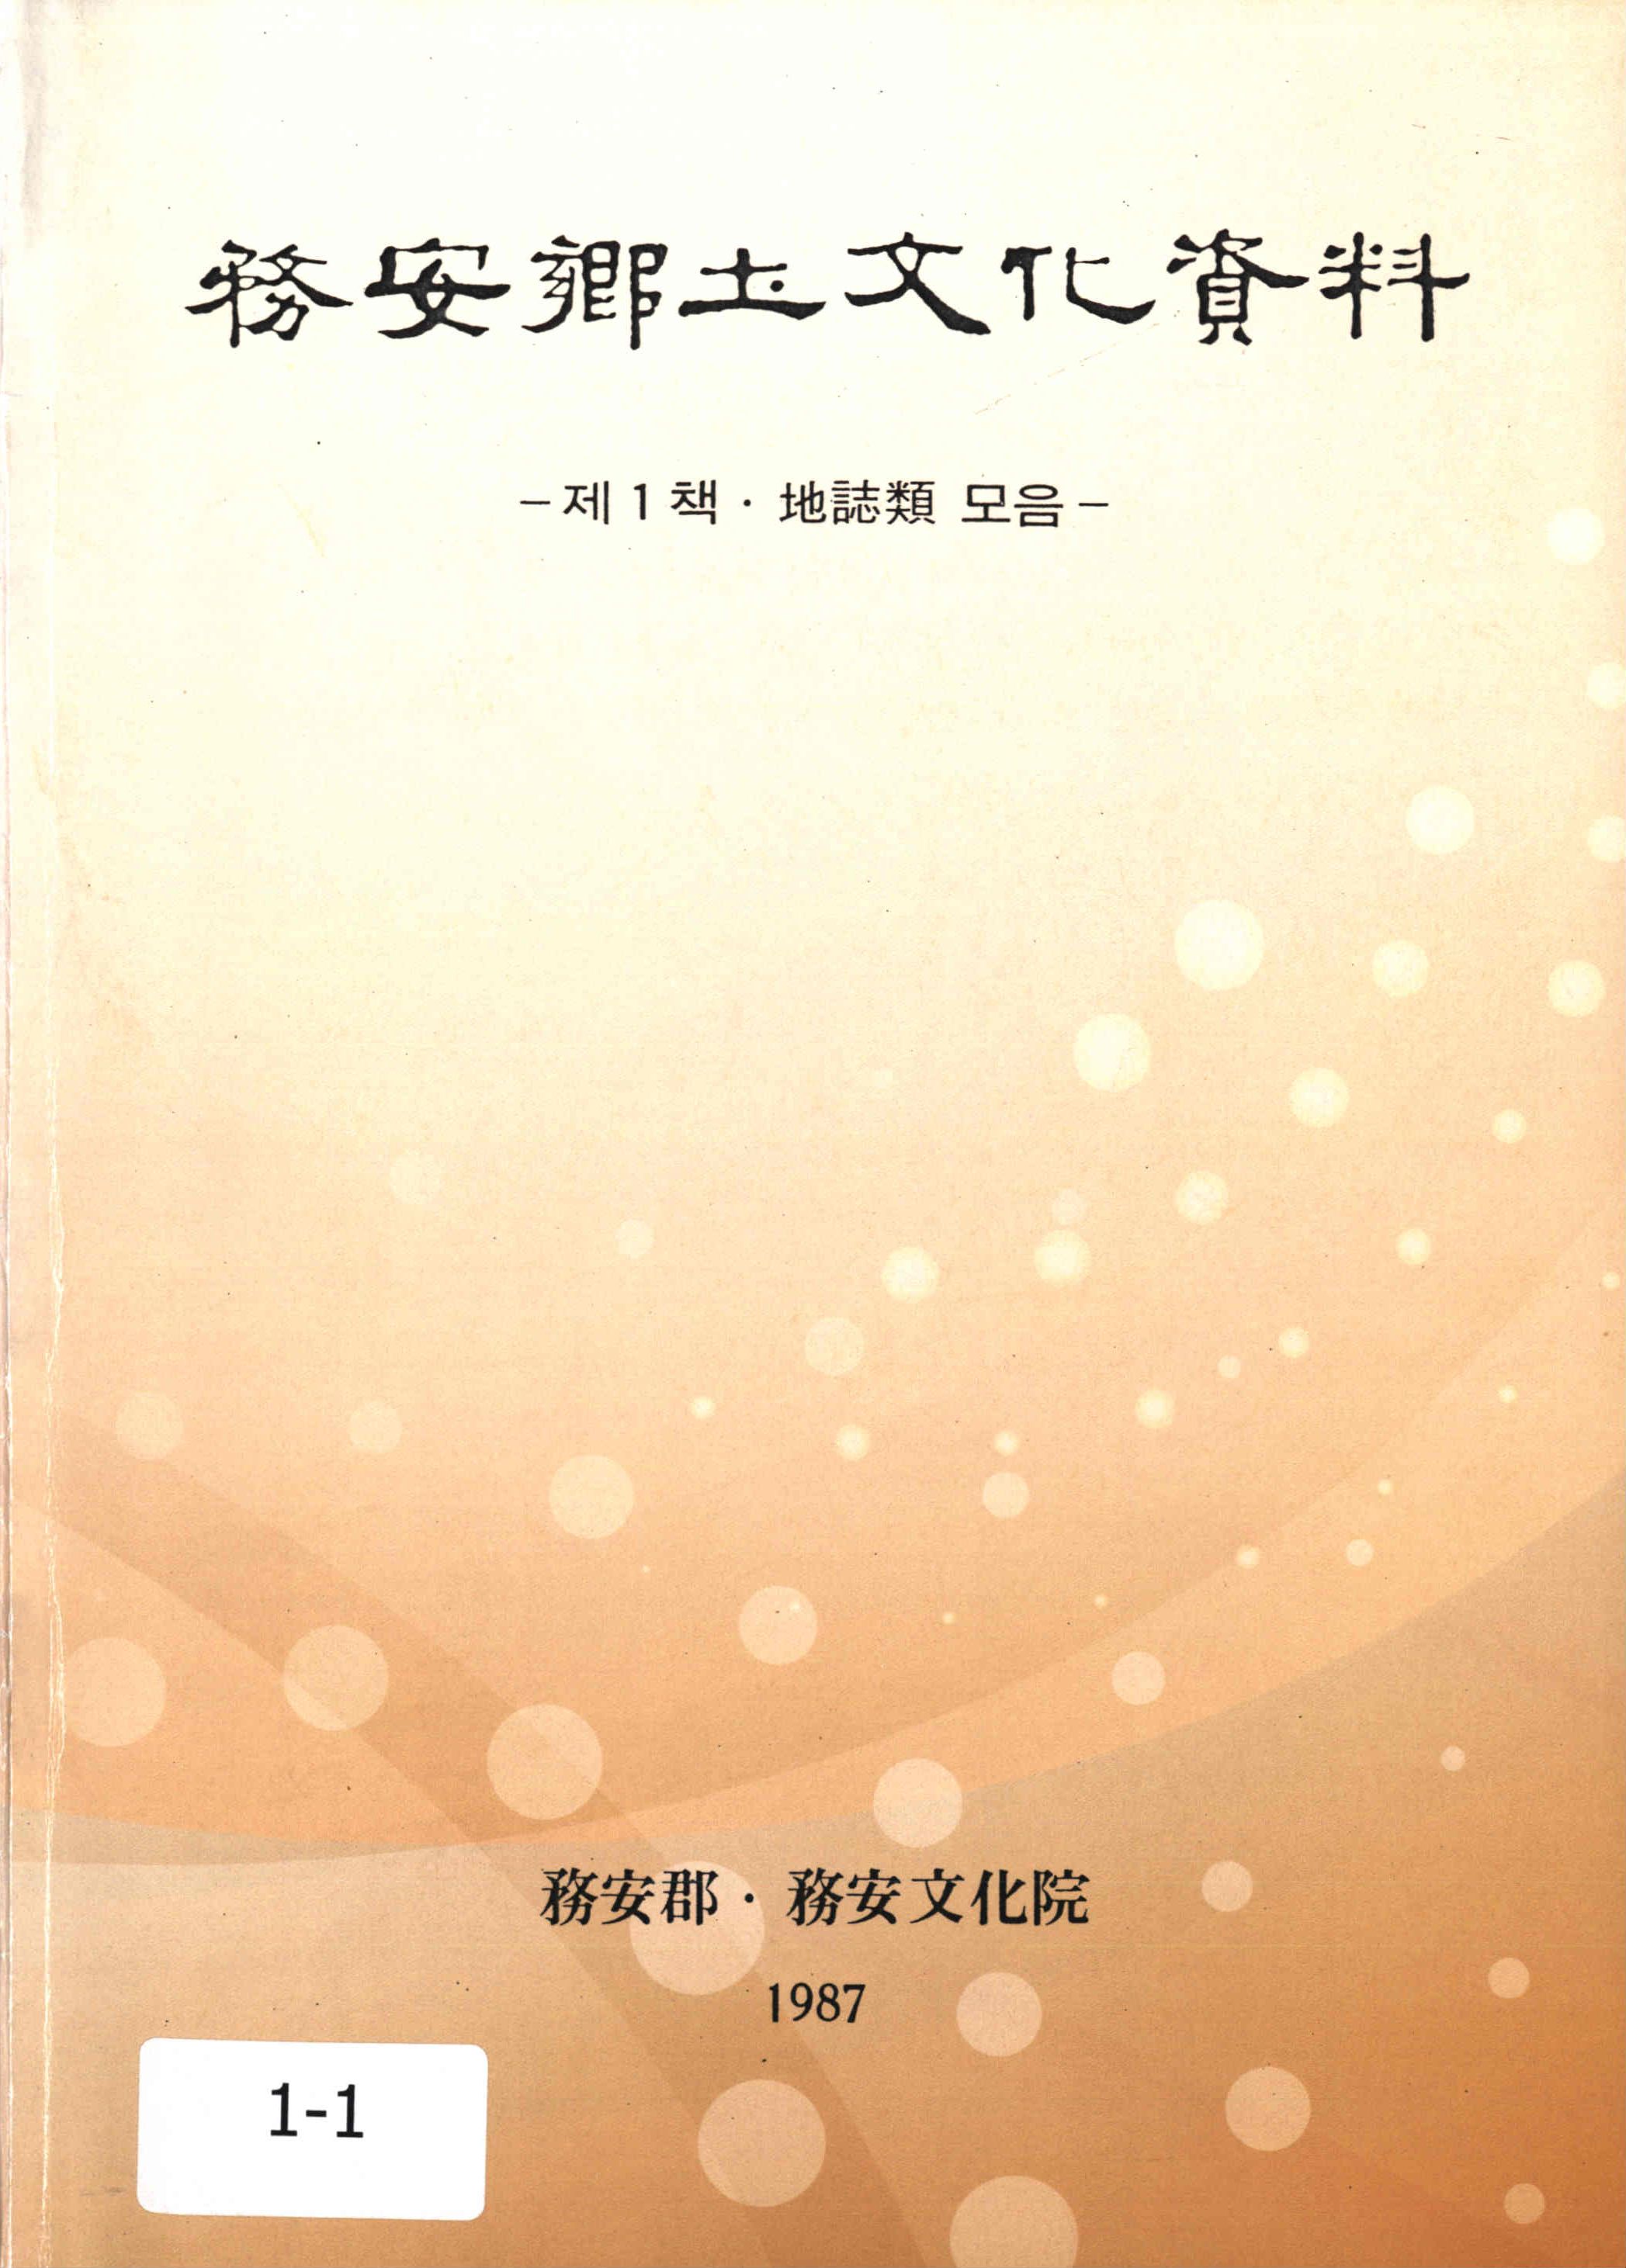 務安鄕土文化資料1987 (무안향토문화자료1987)